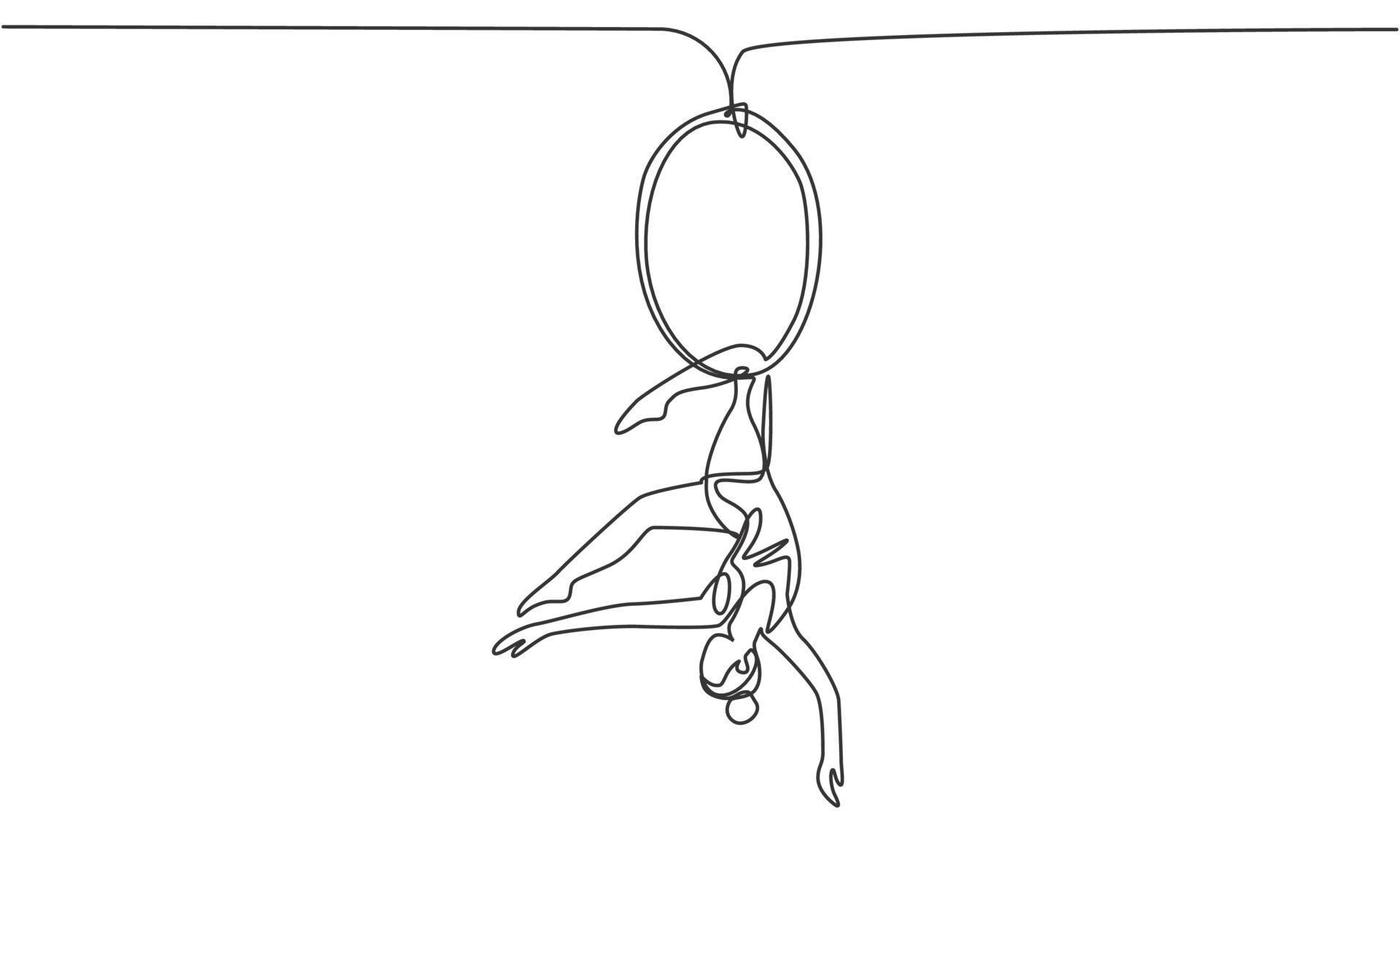 singolo una linea che disegna una donna acrobatica che si esibisce su un cerchio aereo mentre balla con una gamba appesa e la testa in giù. moderna linea continua disegnare grafica vettoriale illustrazione.